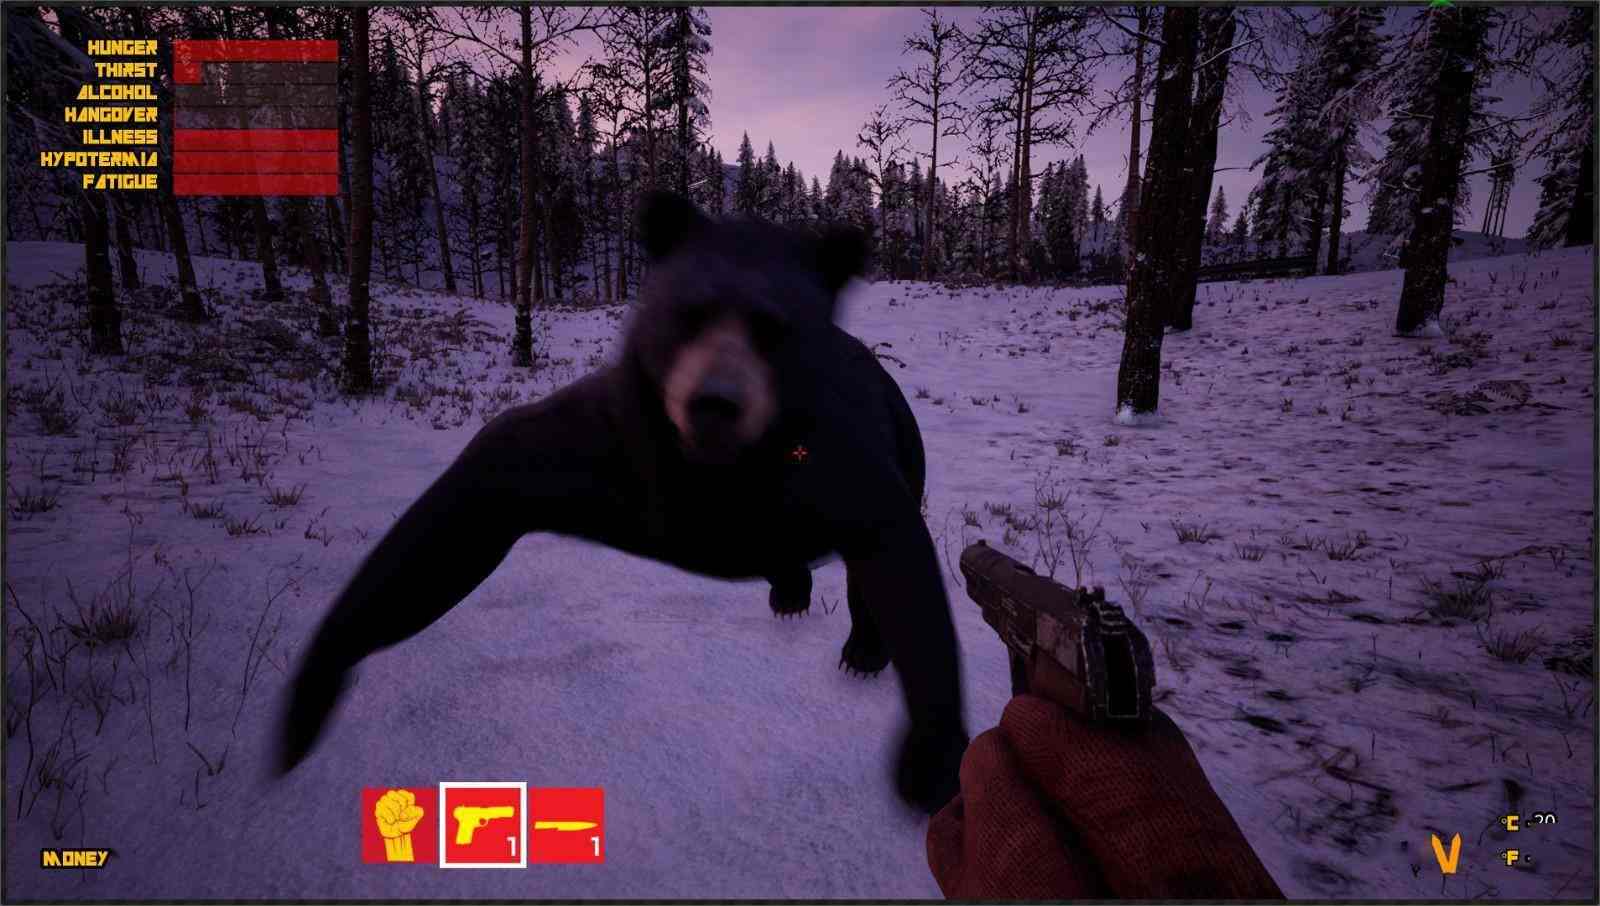 铁路生存模拟游戏《西伯利亚铁路模拟器》5月30日EA发售